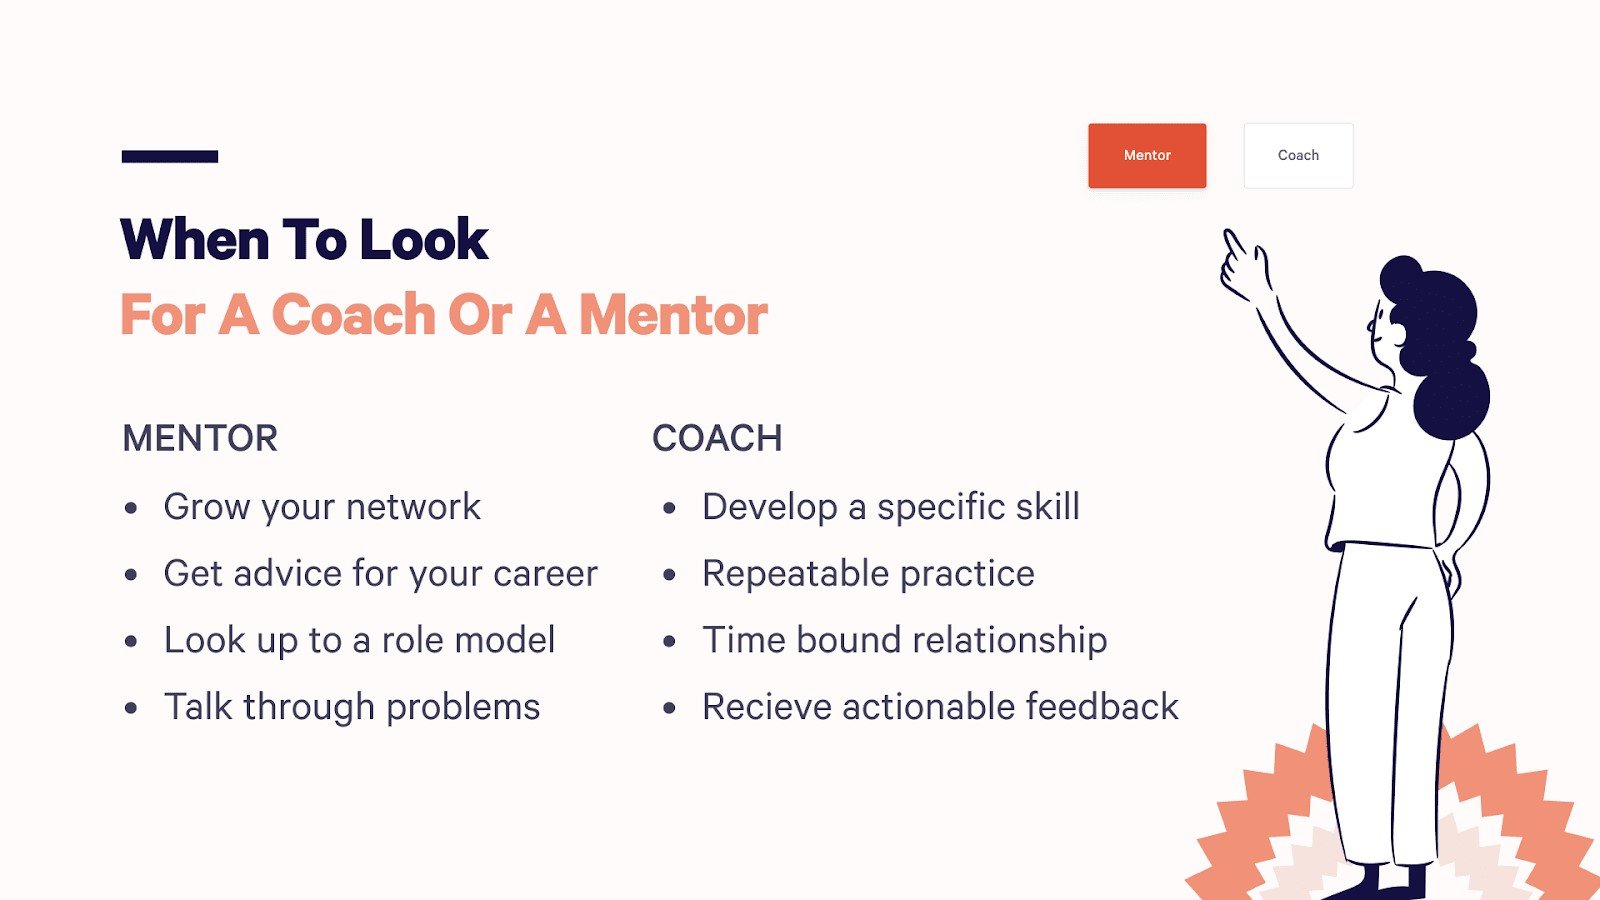 Mentor vs Coach